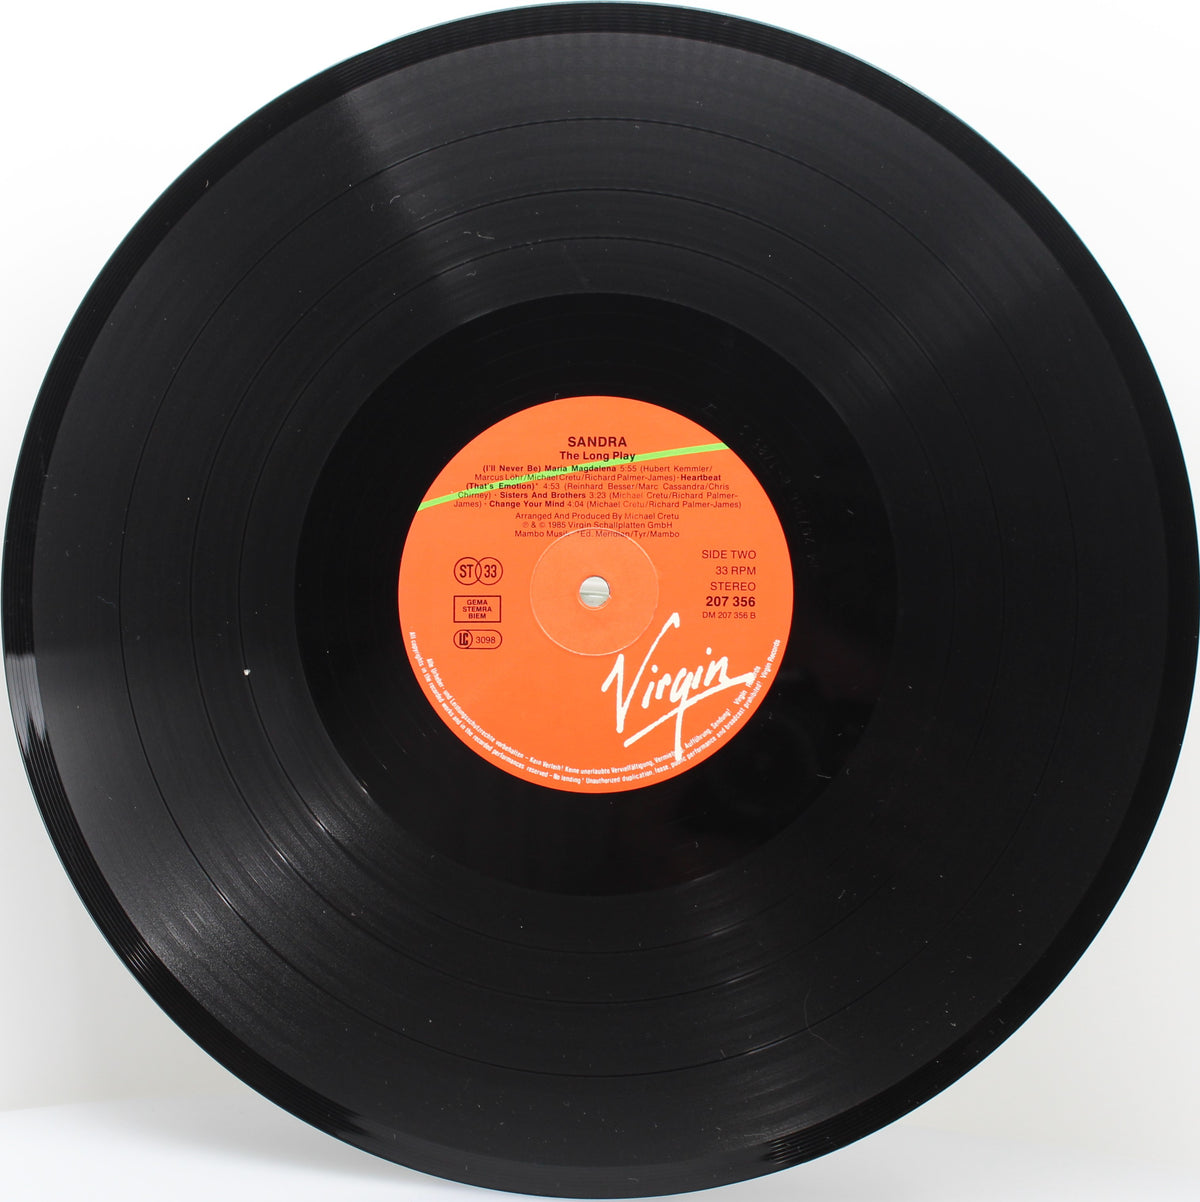 Sandra – The Long Play, Vinyl, LP, Album, Stereo, Europe 1985